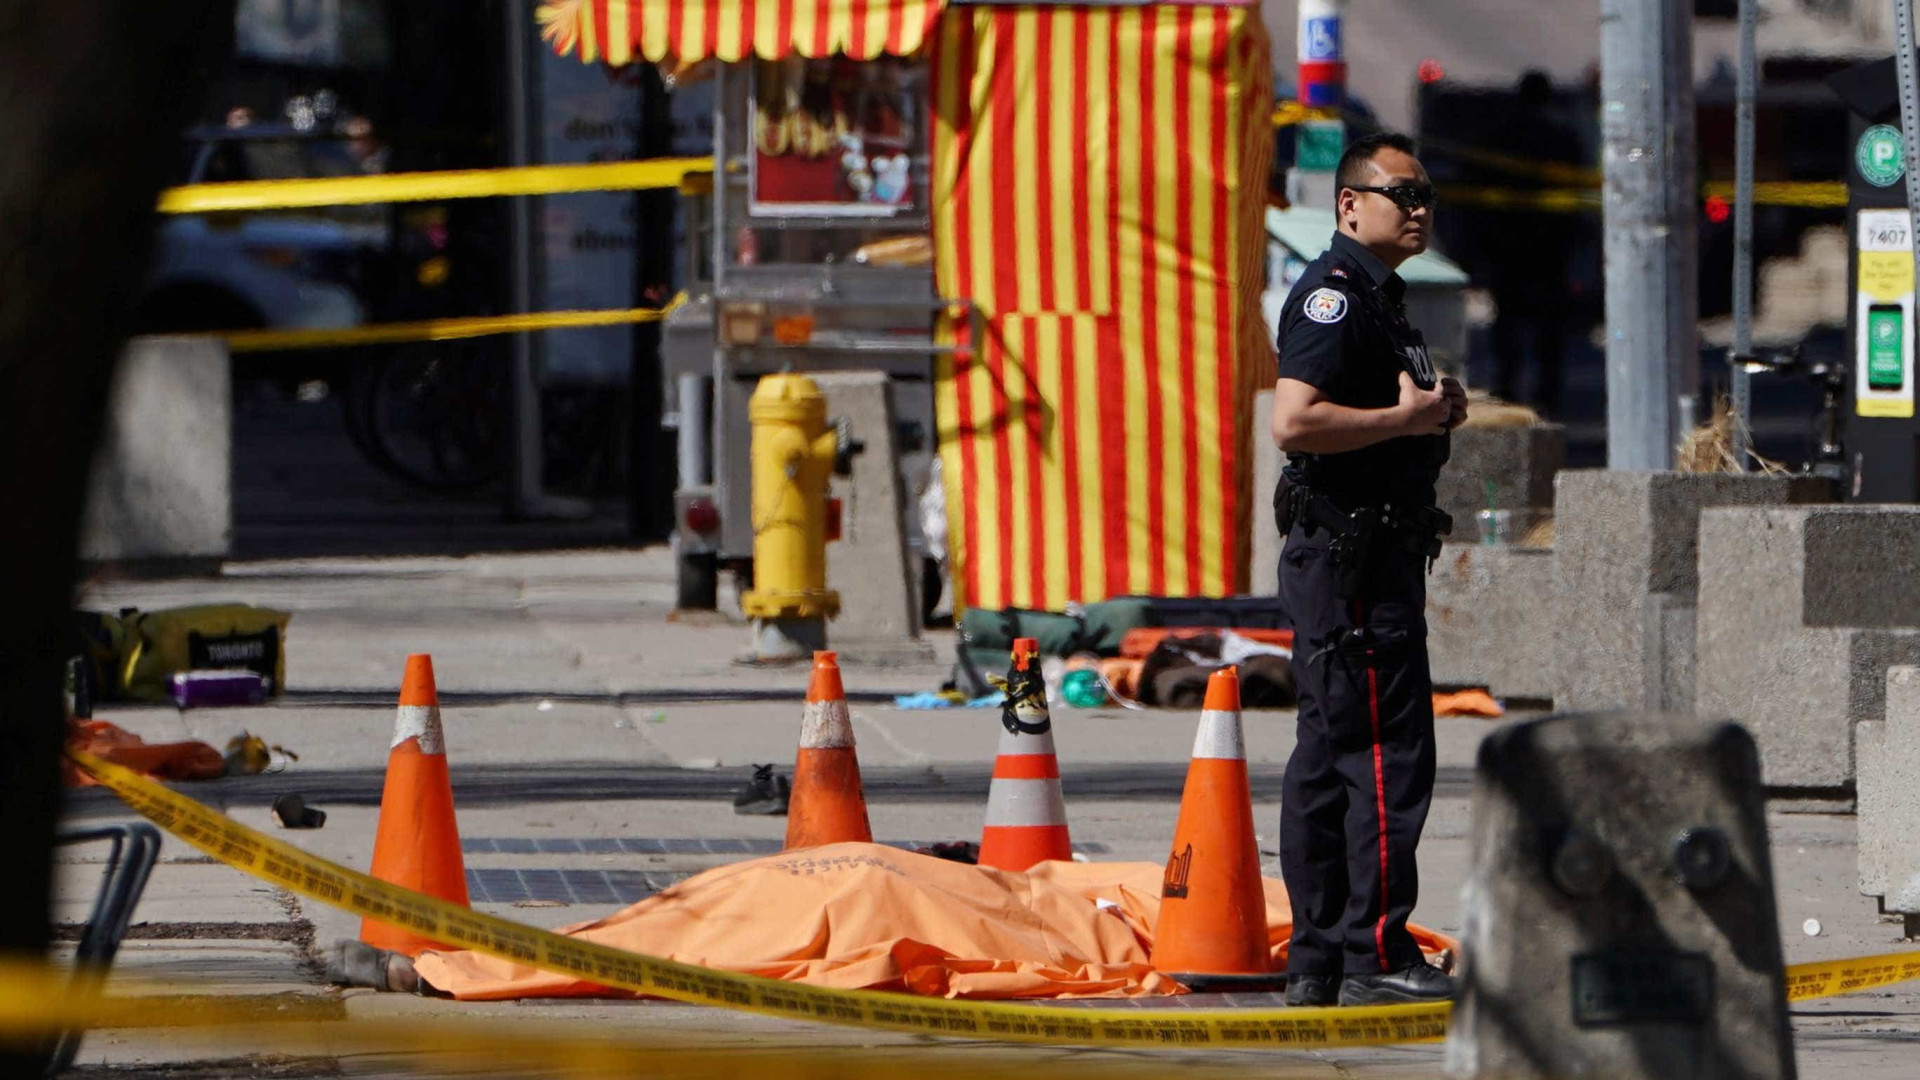 Atropelamento em massa no Canadá deixa ao menos dez mortos